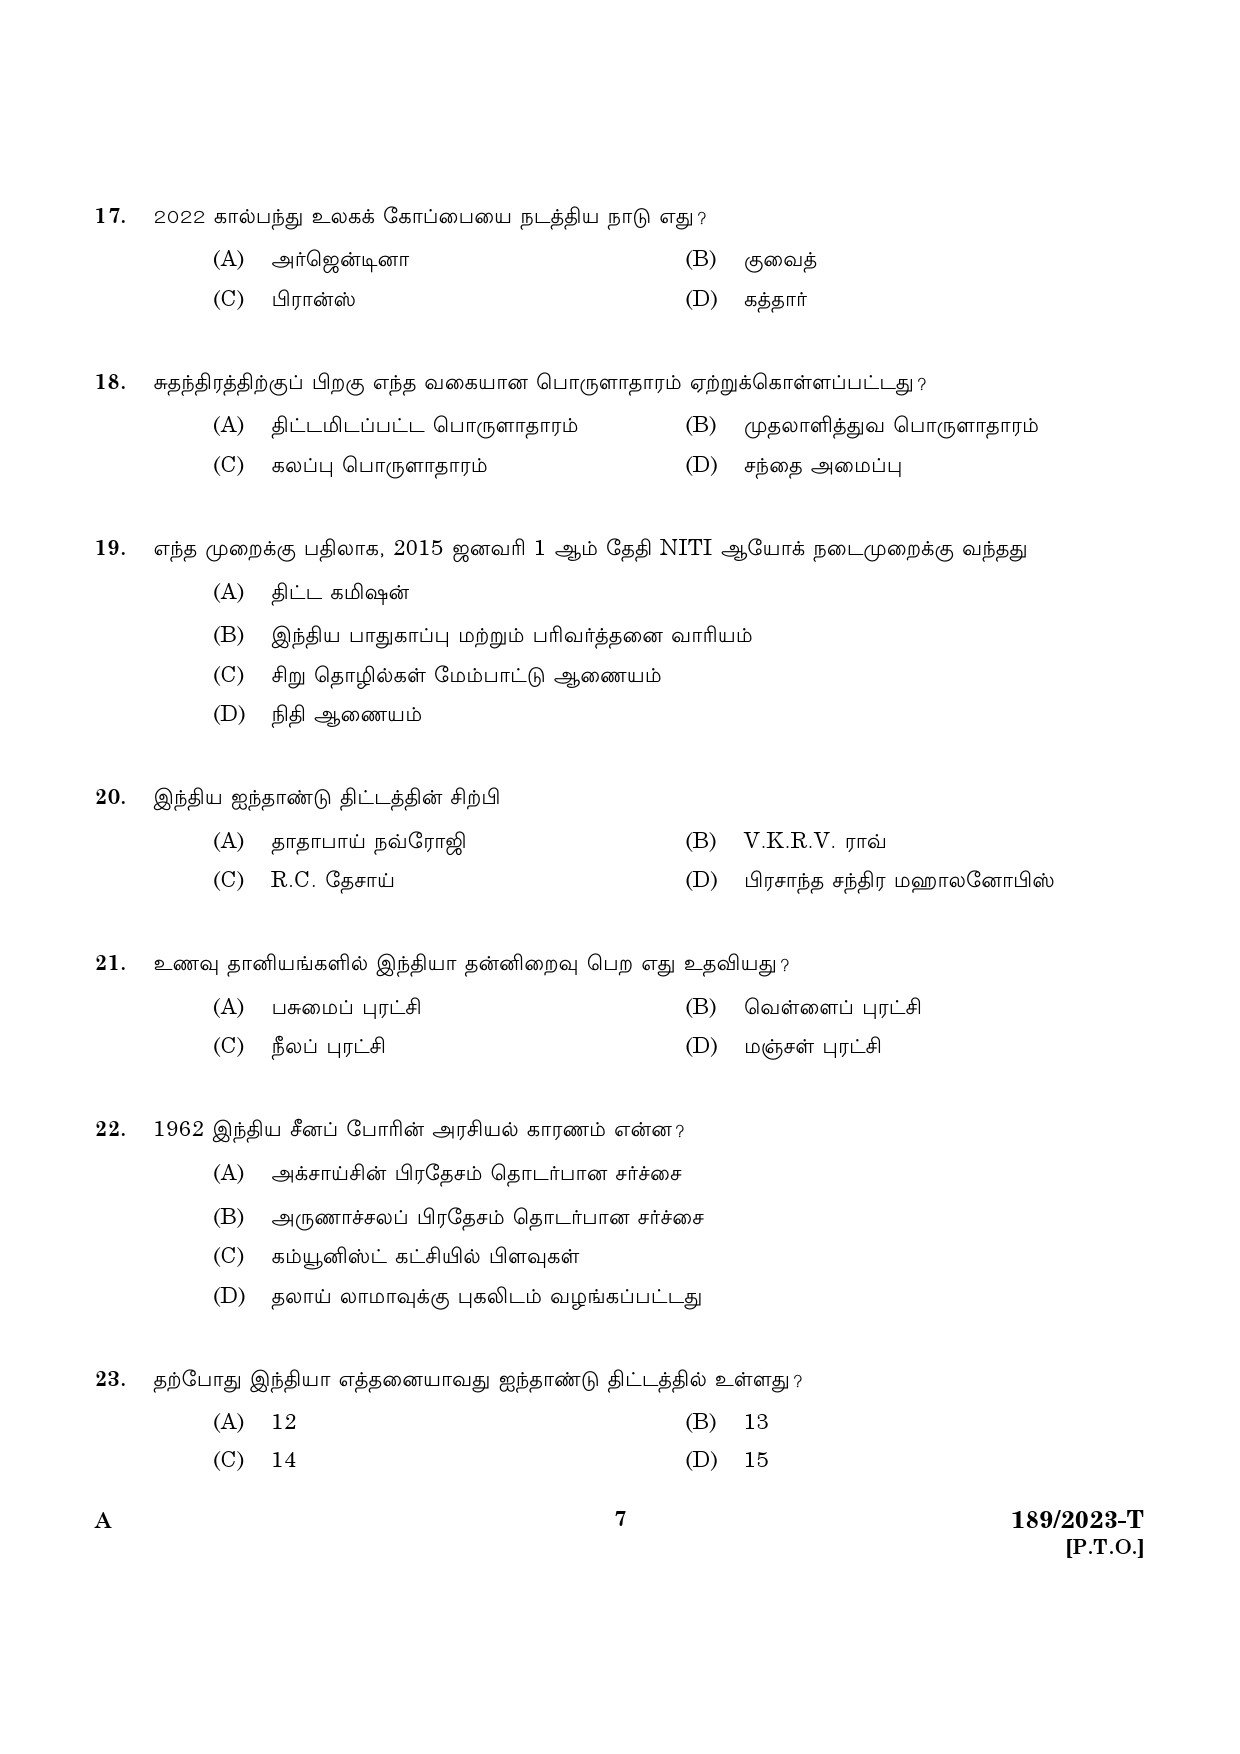 KPSC LGS Tamil Exam 2023 Code 1892023 T 5